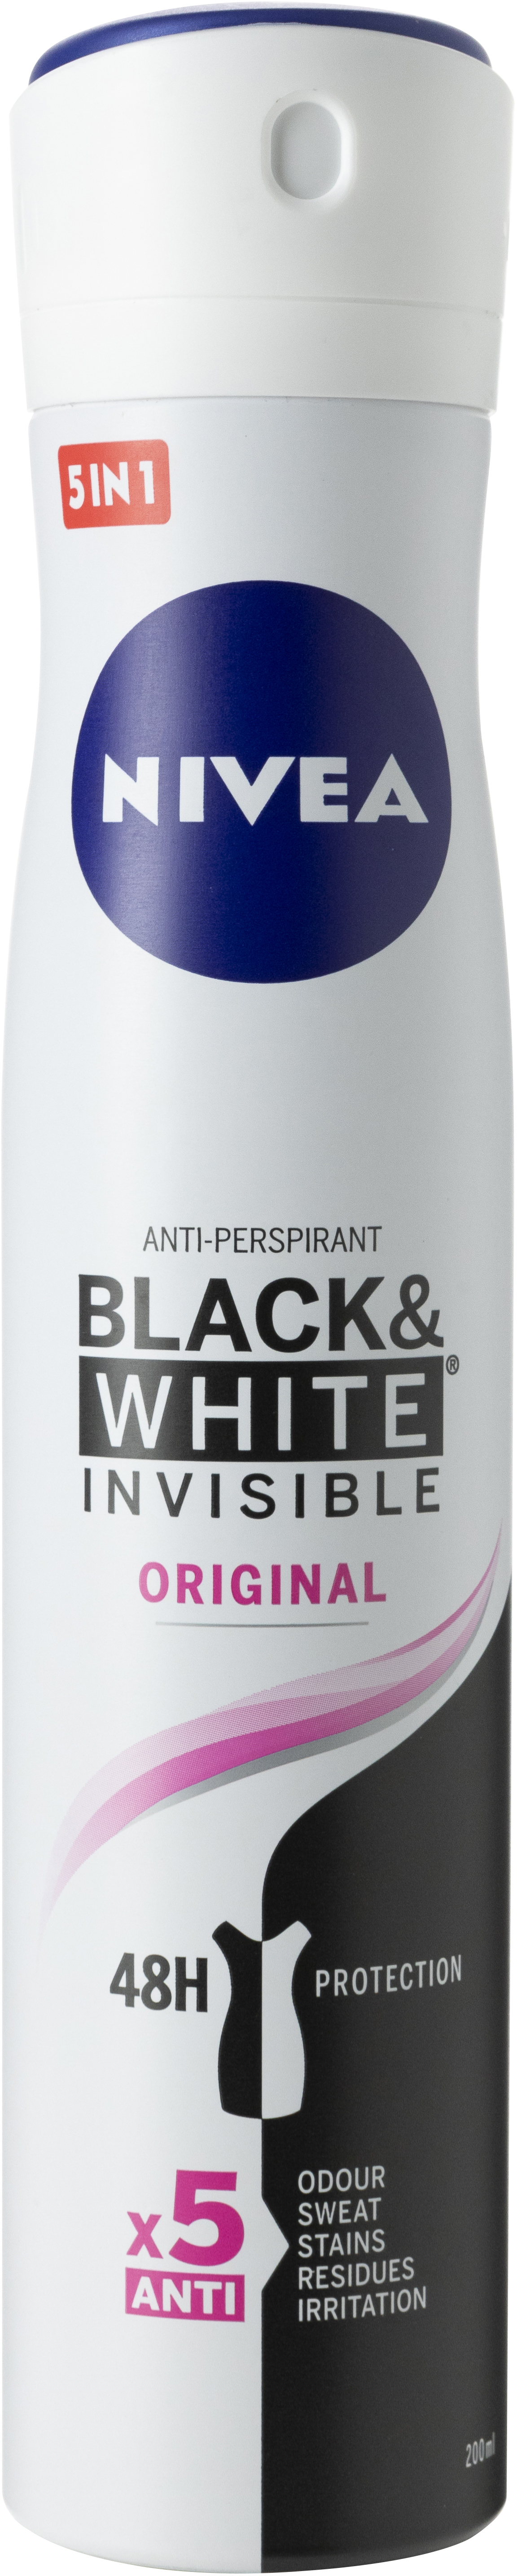 BLACK & WHITE INVISIBLE ORIGINAL